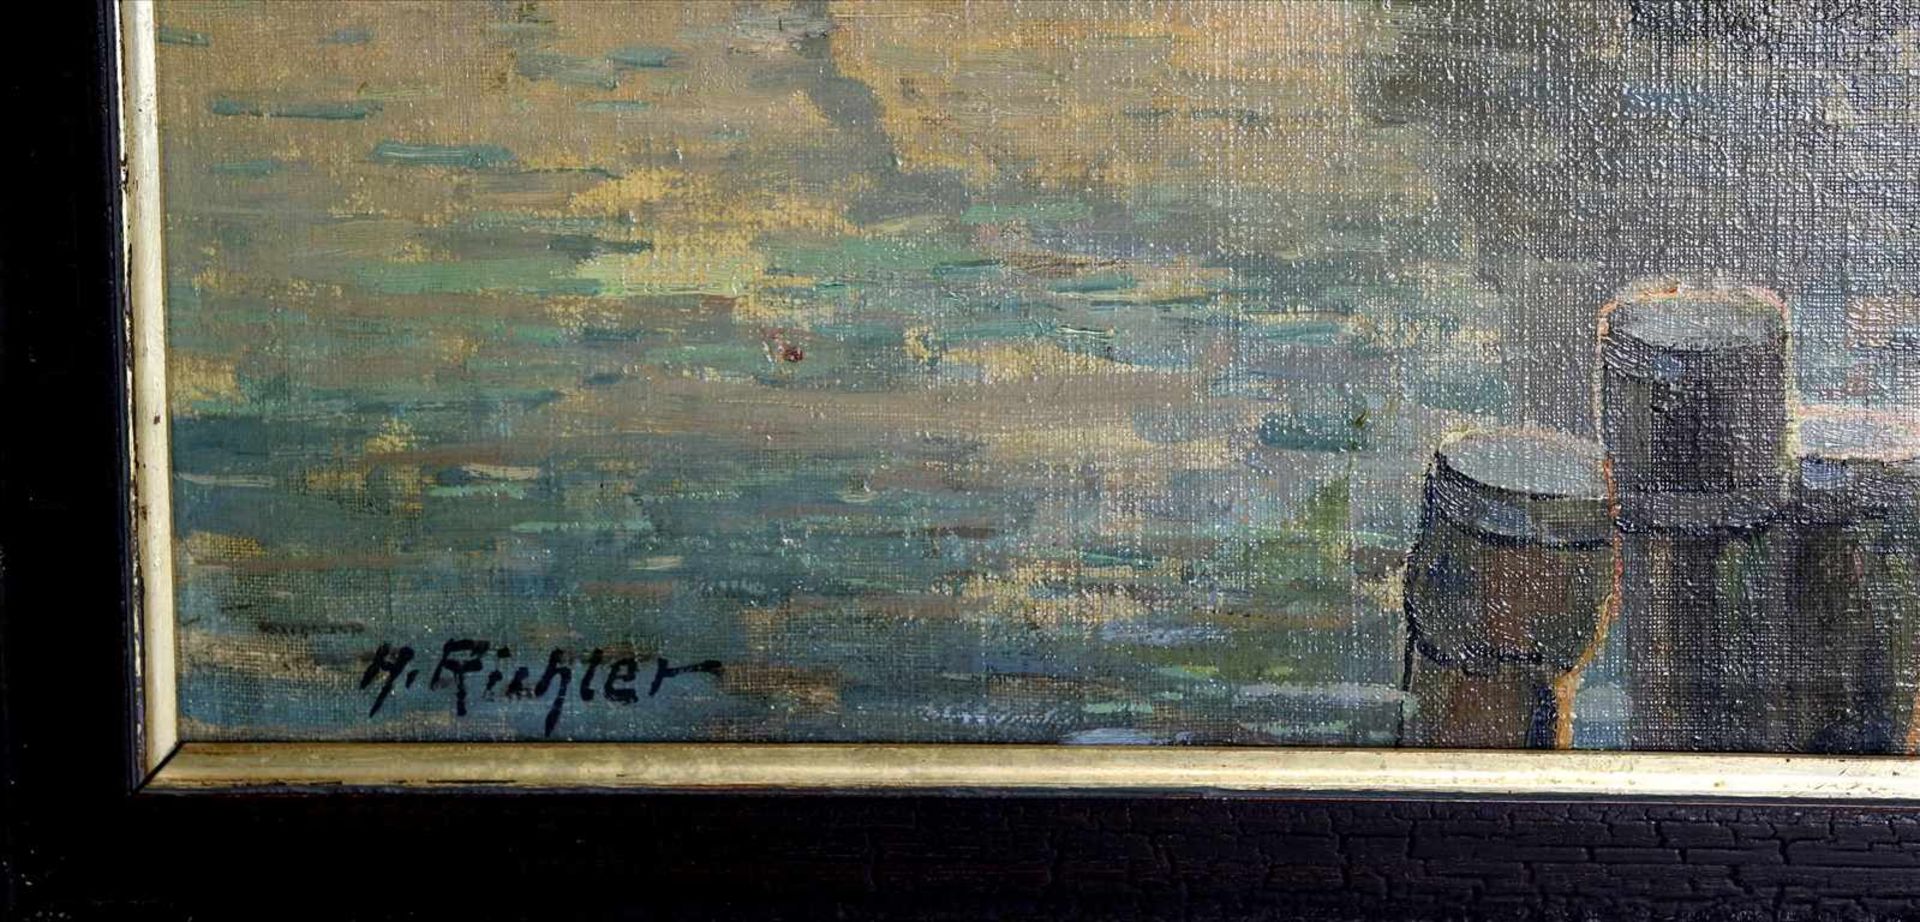 Richter, HHolländische Hafenszene. Öl auf Leinwand. Unten links signiert. Größe ca. 70 x 100 cm, - Bild 4 aus 4